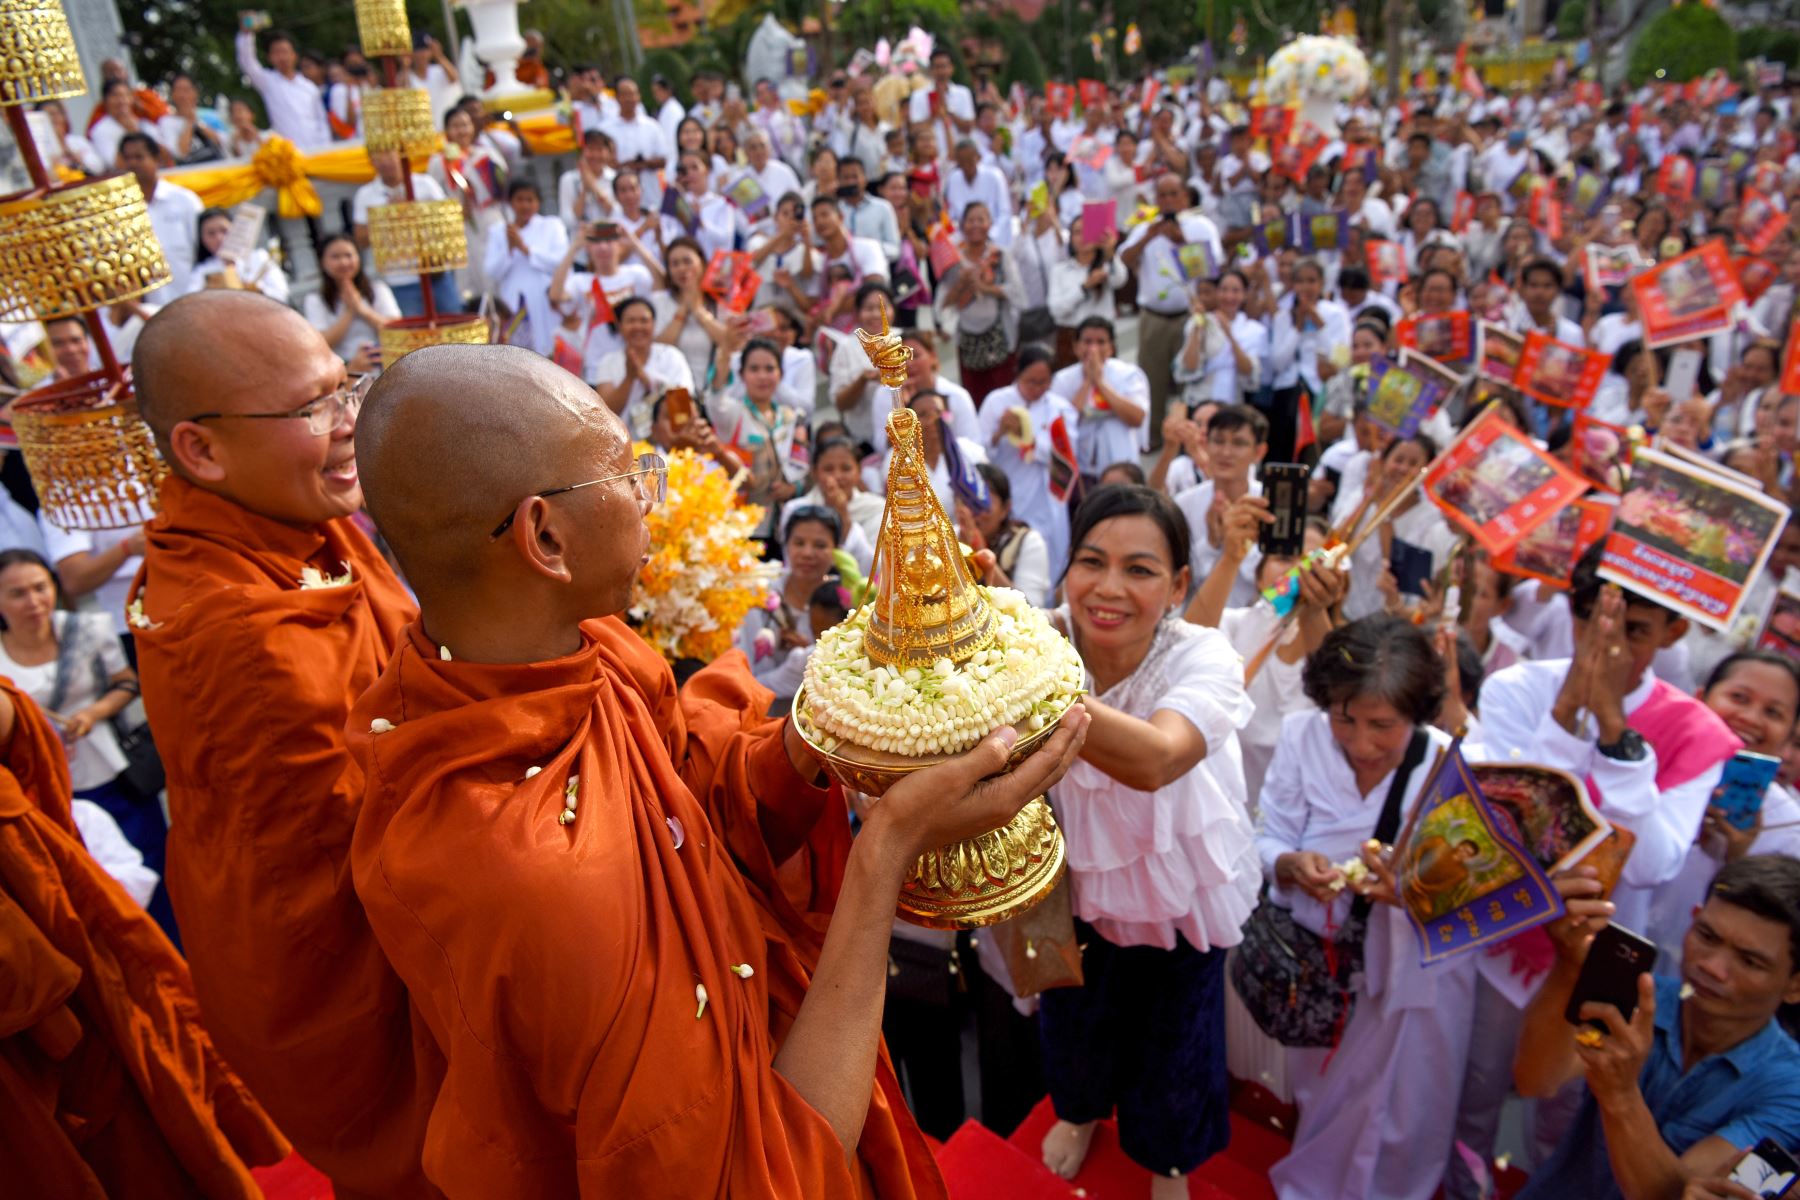 Monjes budistas camboyanos llevan una urna que supuestamente contiene los restos de uno de los huesos de Buda en el interior durante la celebración budista de Visak Bochea en una pagoda en Phnom Penh.
Foto:AFP